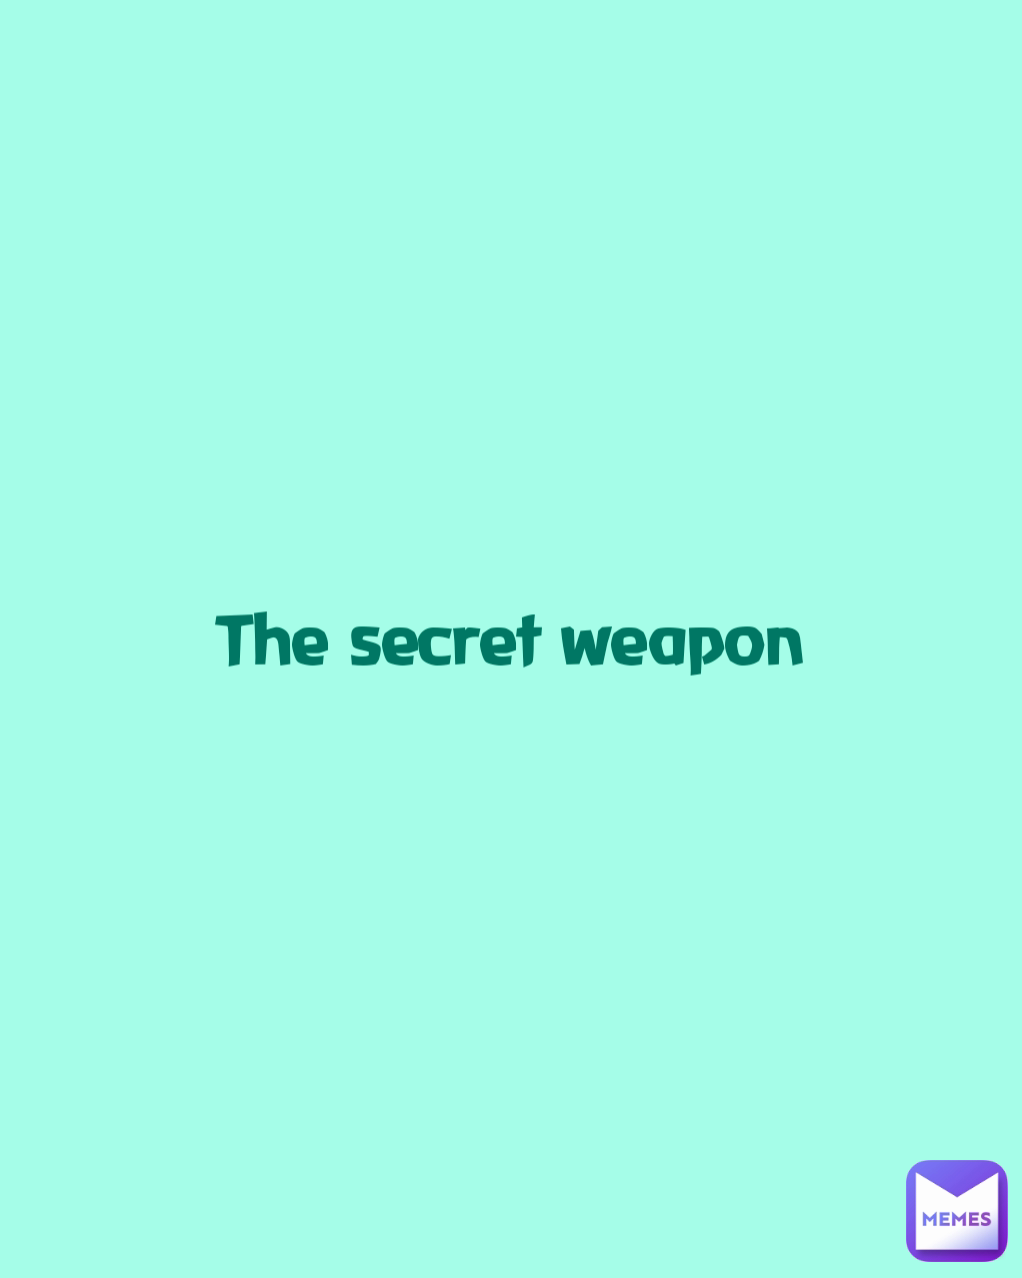 The secret weapon